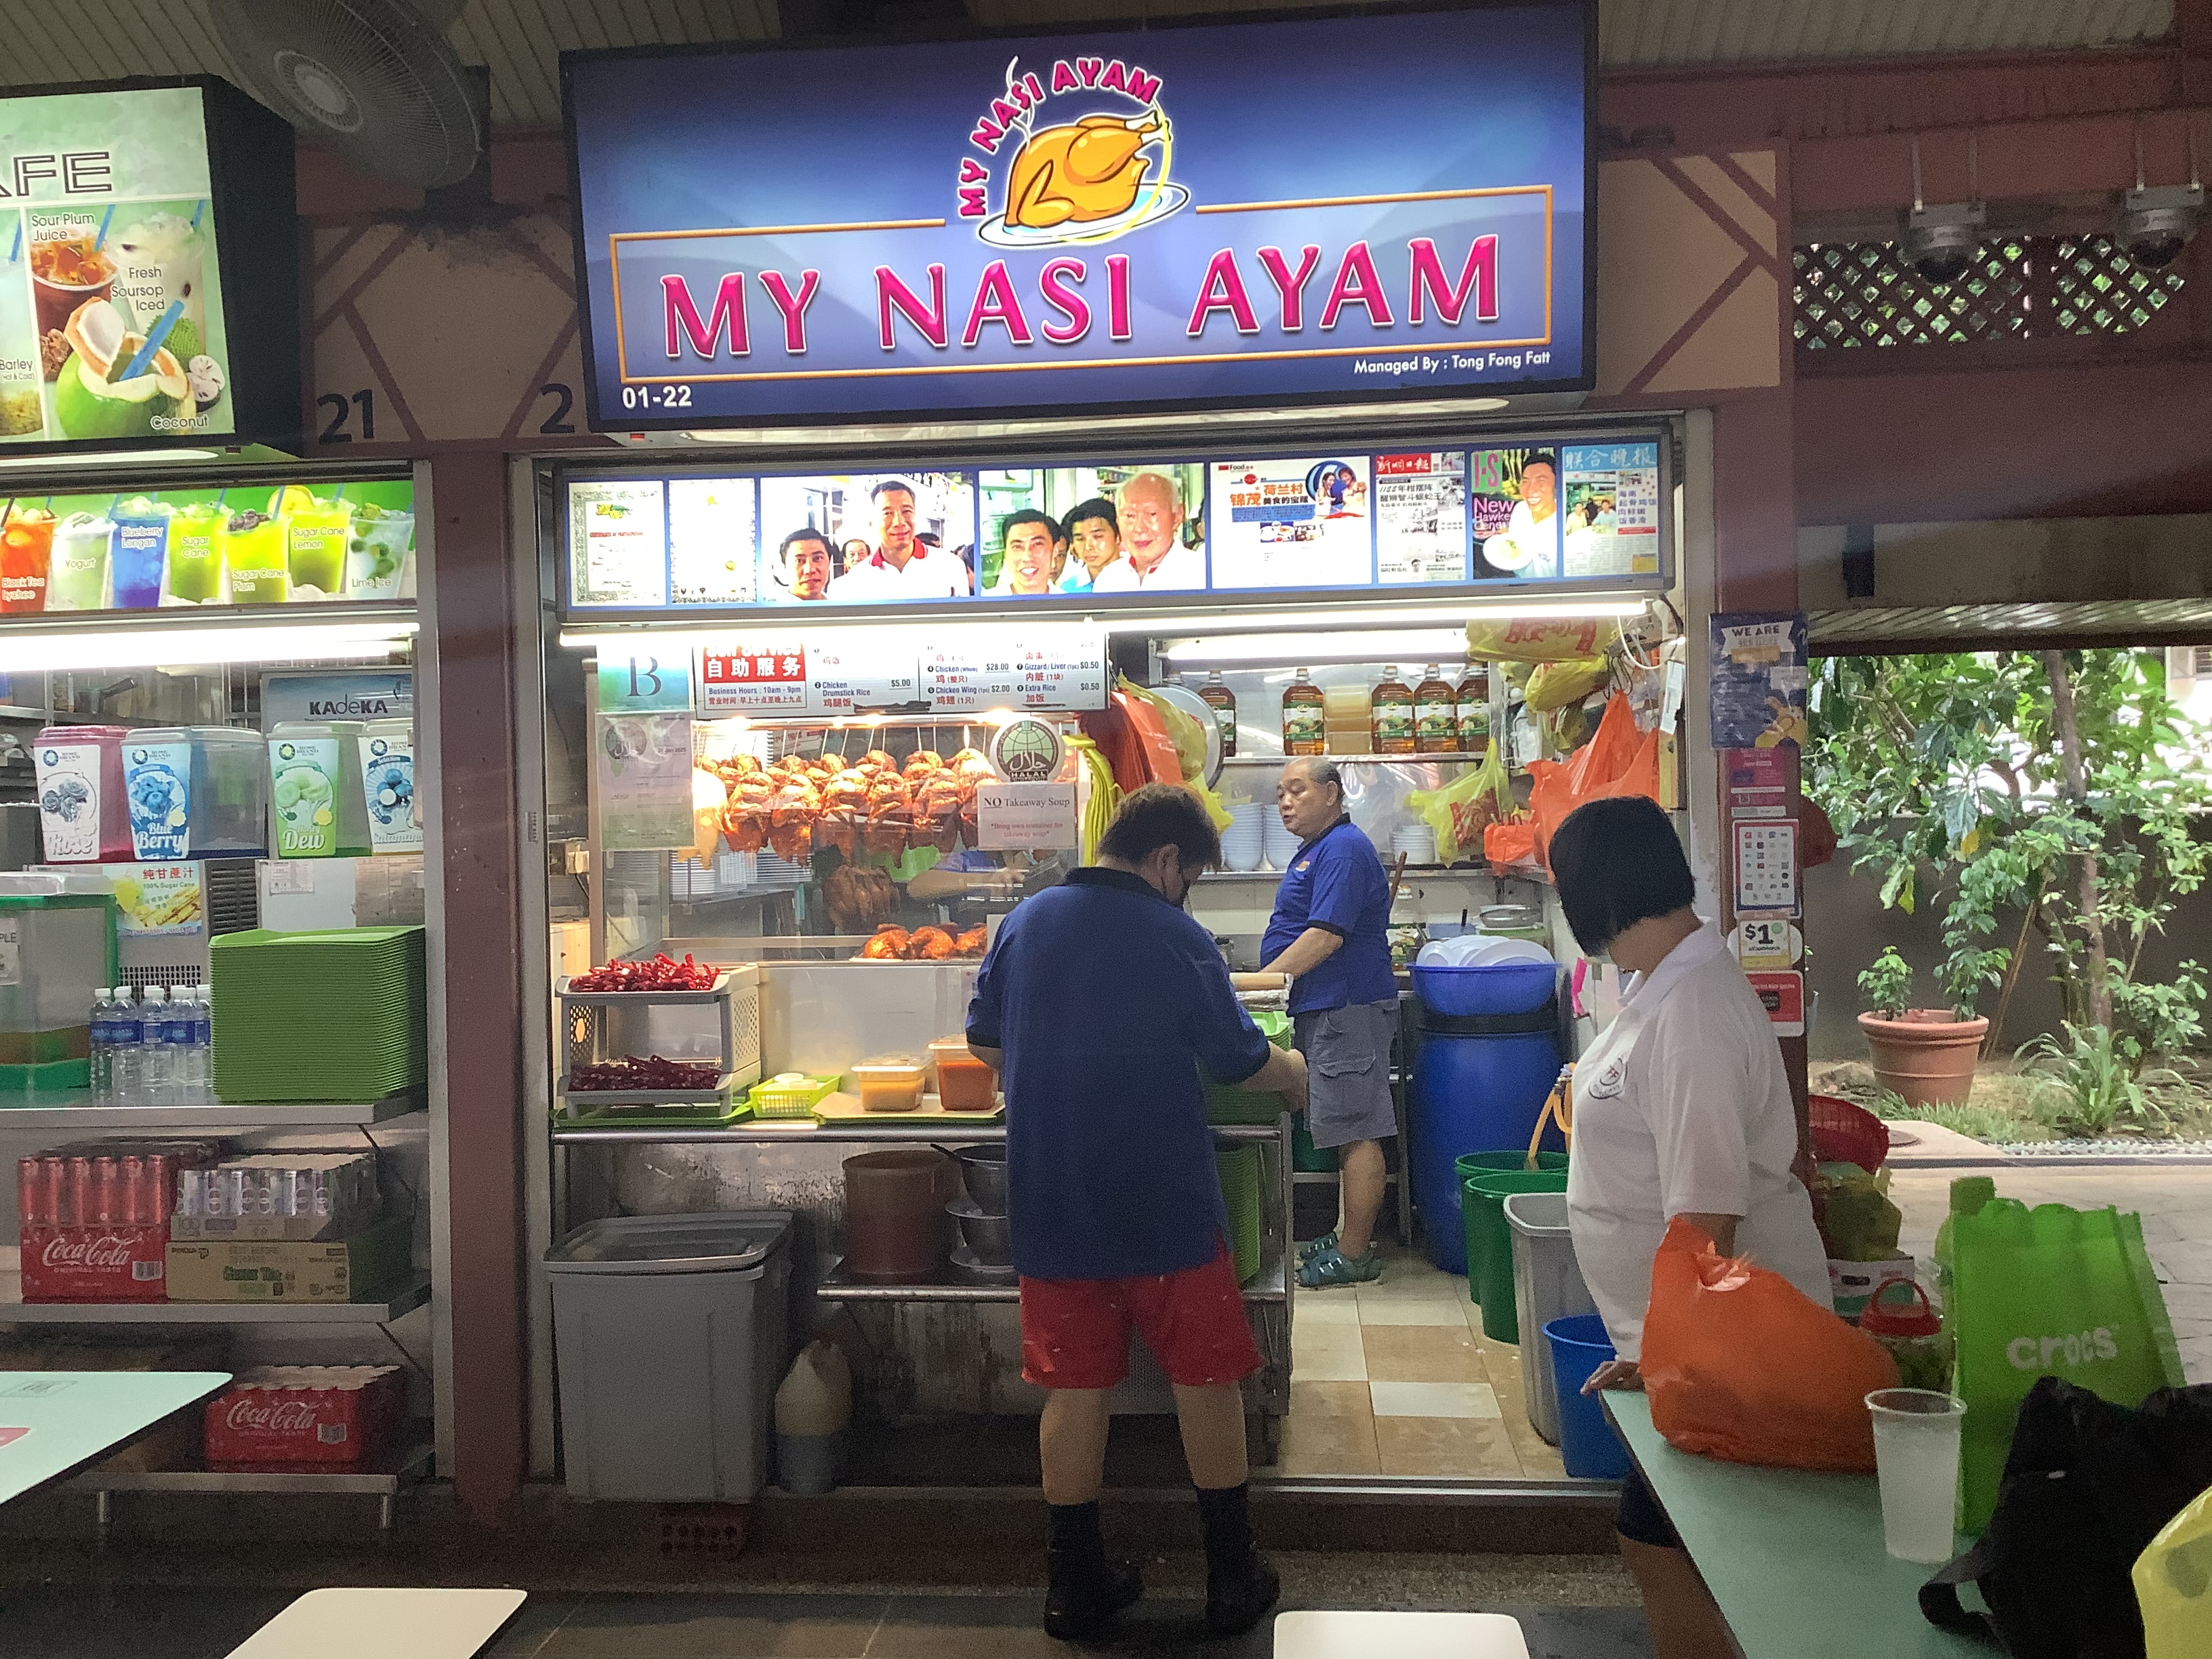 My Nasi Ayam (Hawker Stall)